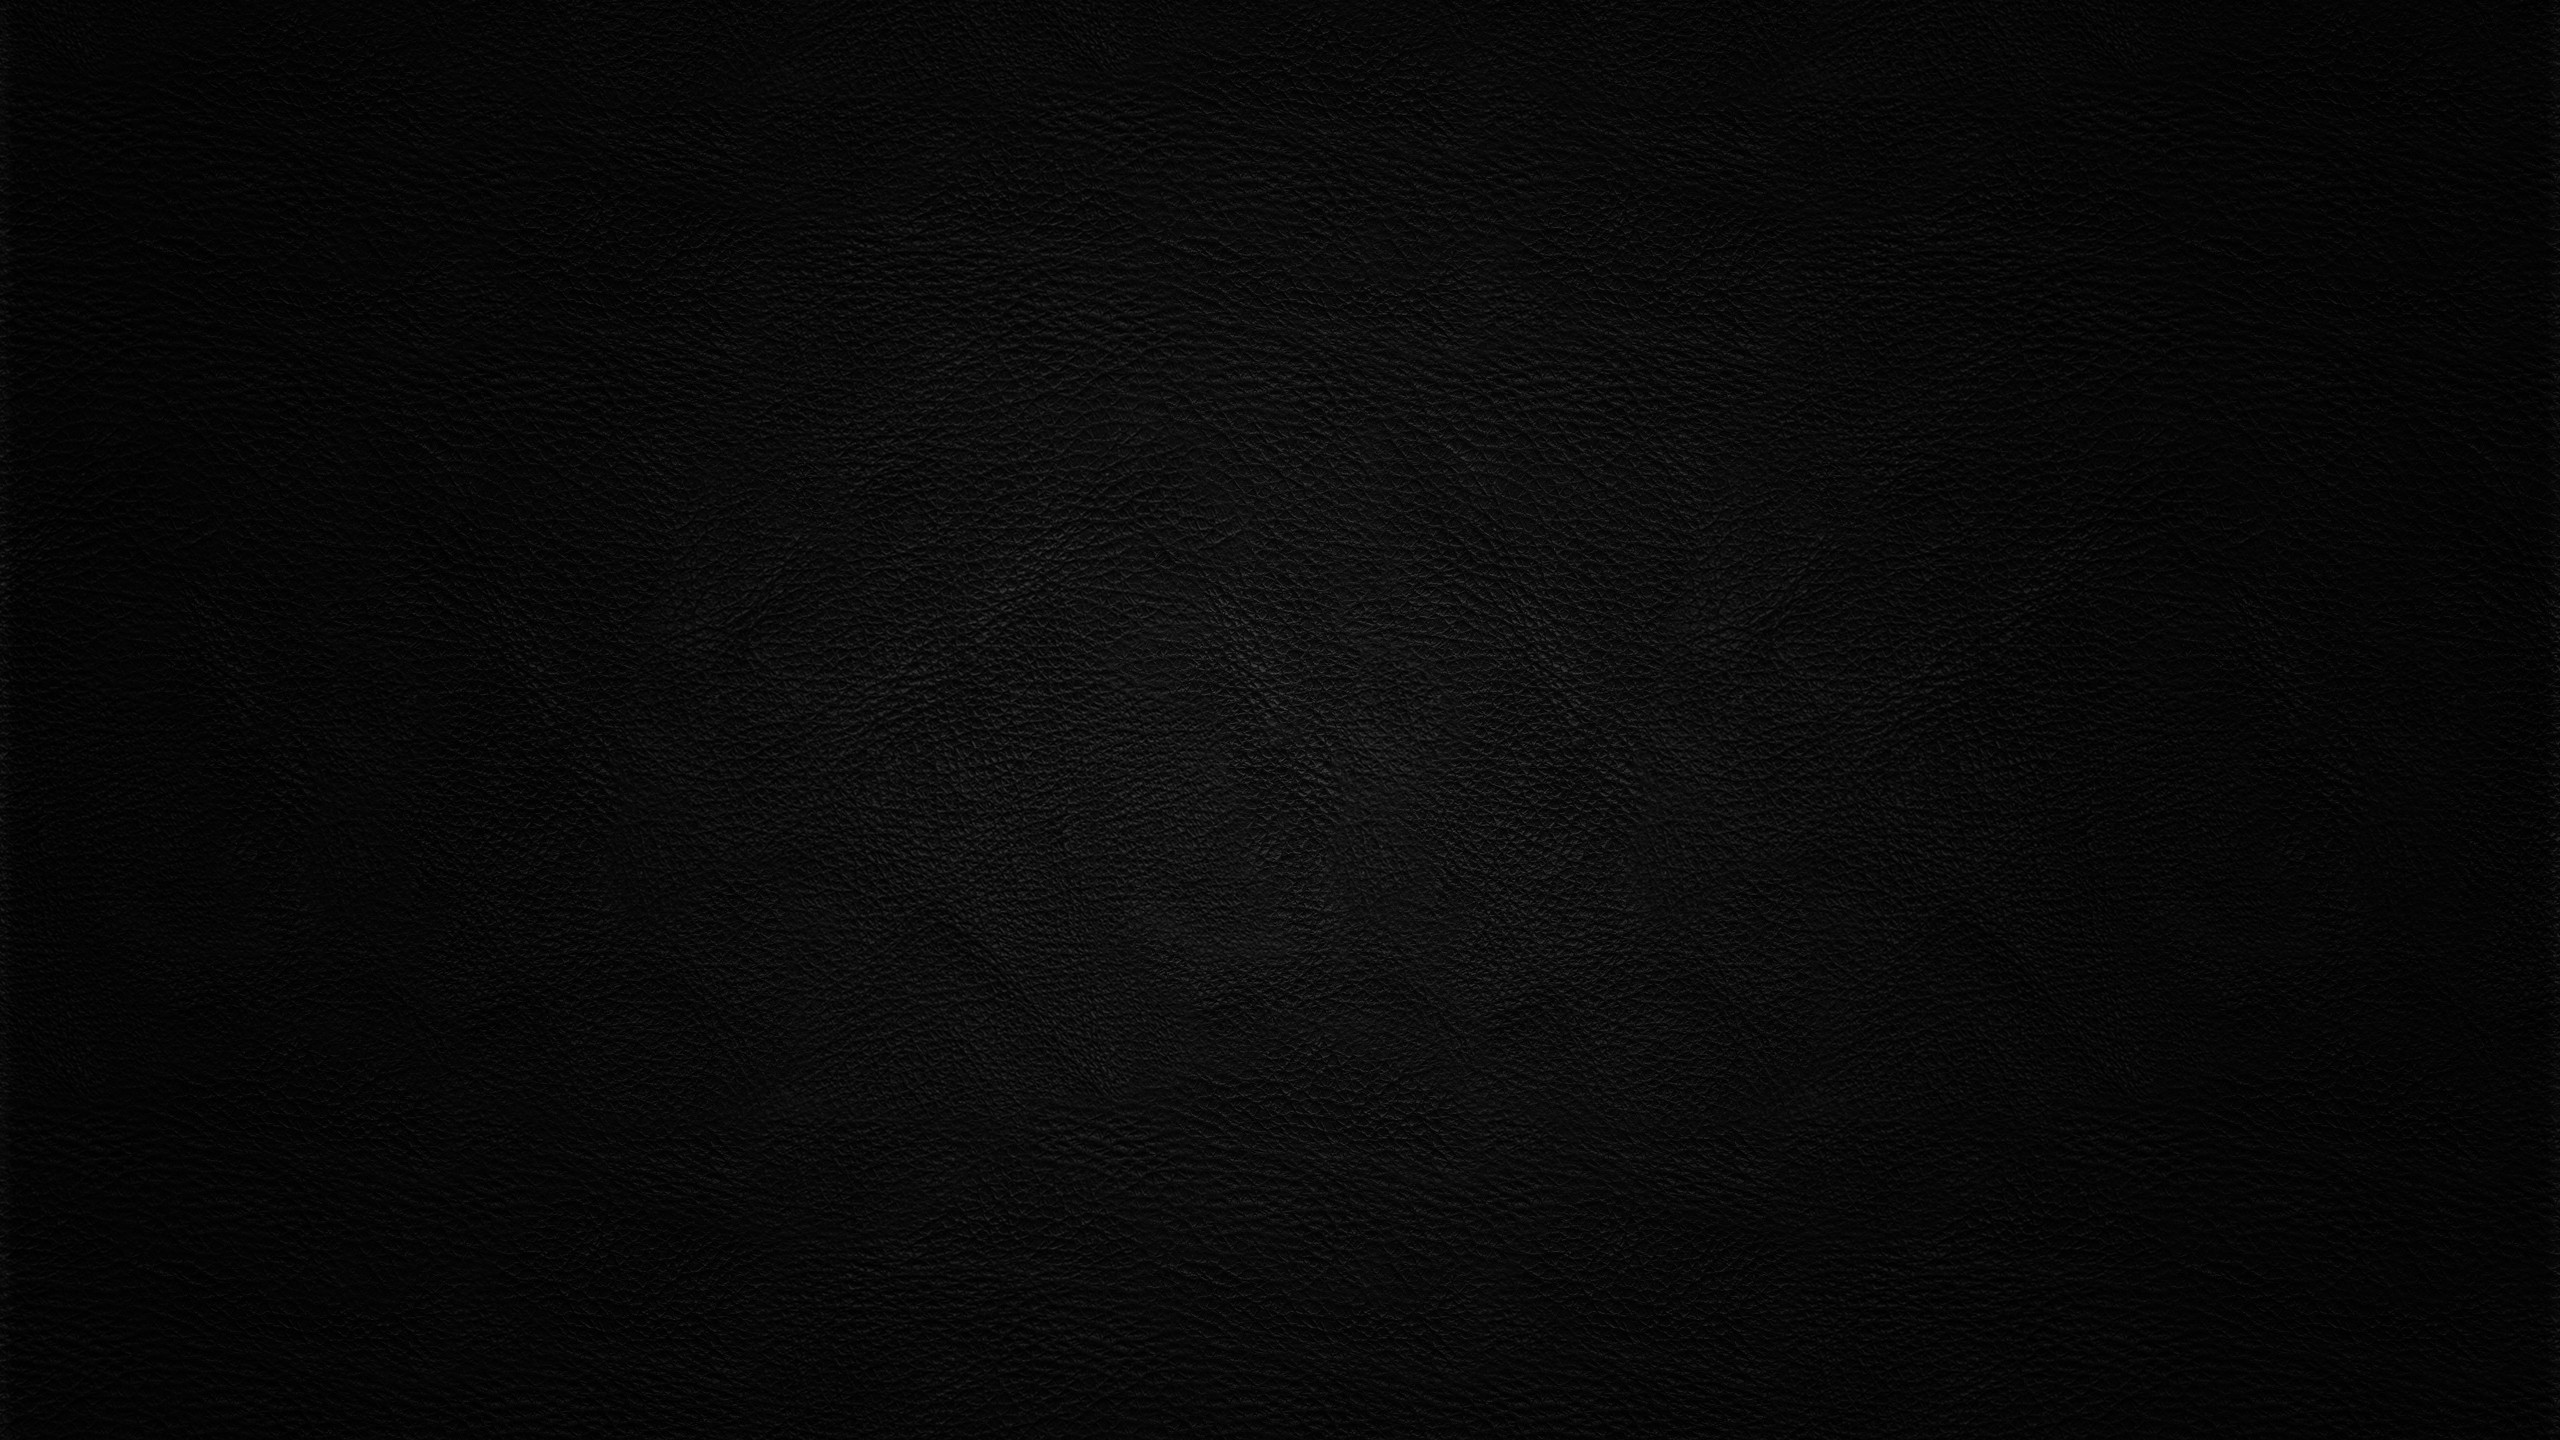 Textured Dark Black Leather 2560x1440